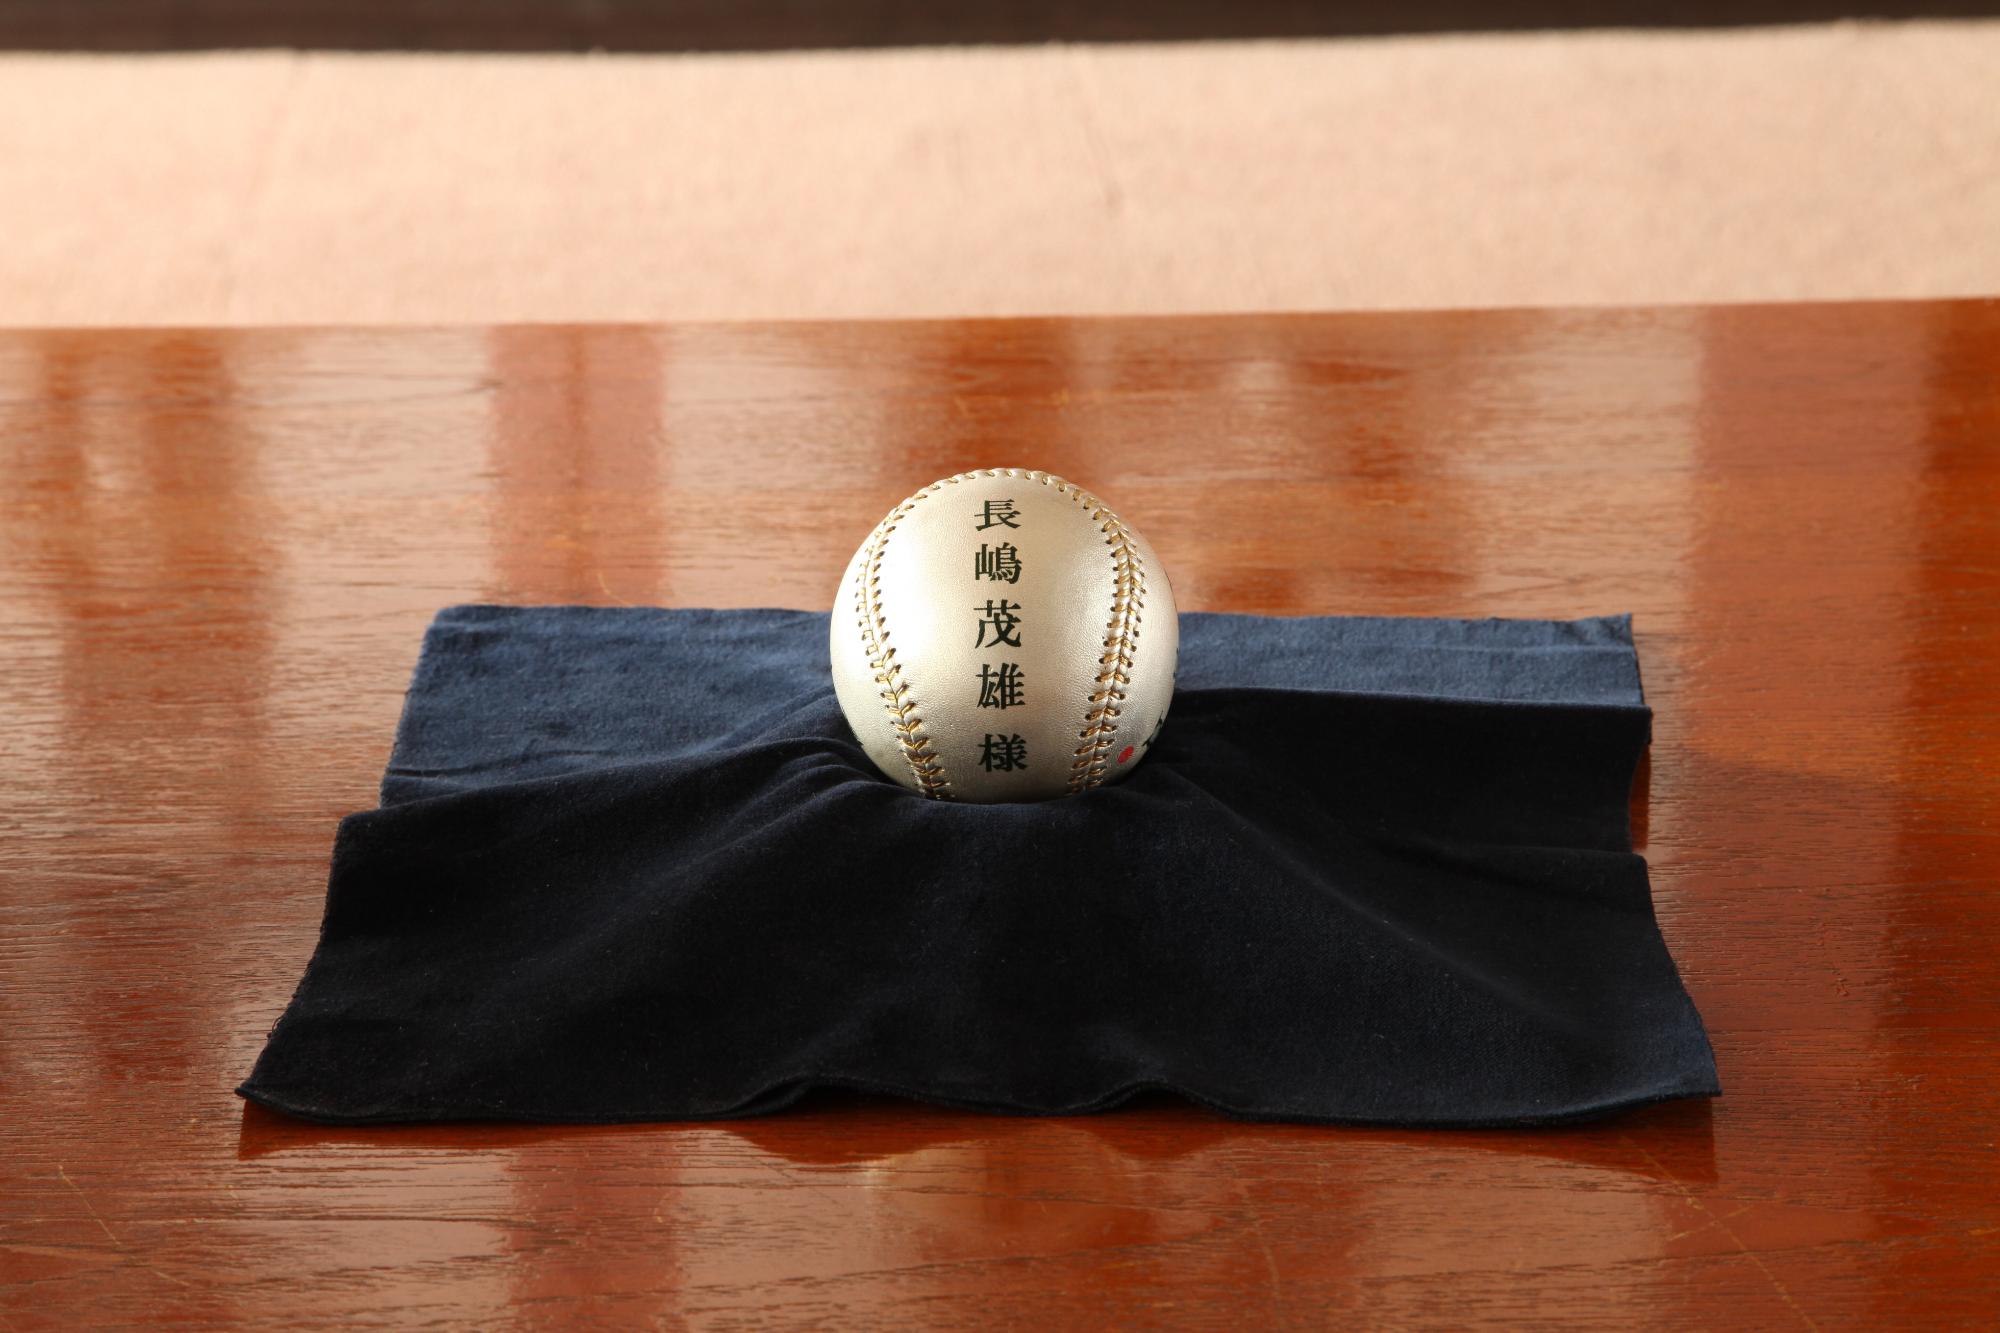 長嶋茂雄様と書かれた銀色のボールが、黒い布の上に置かれている写真